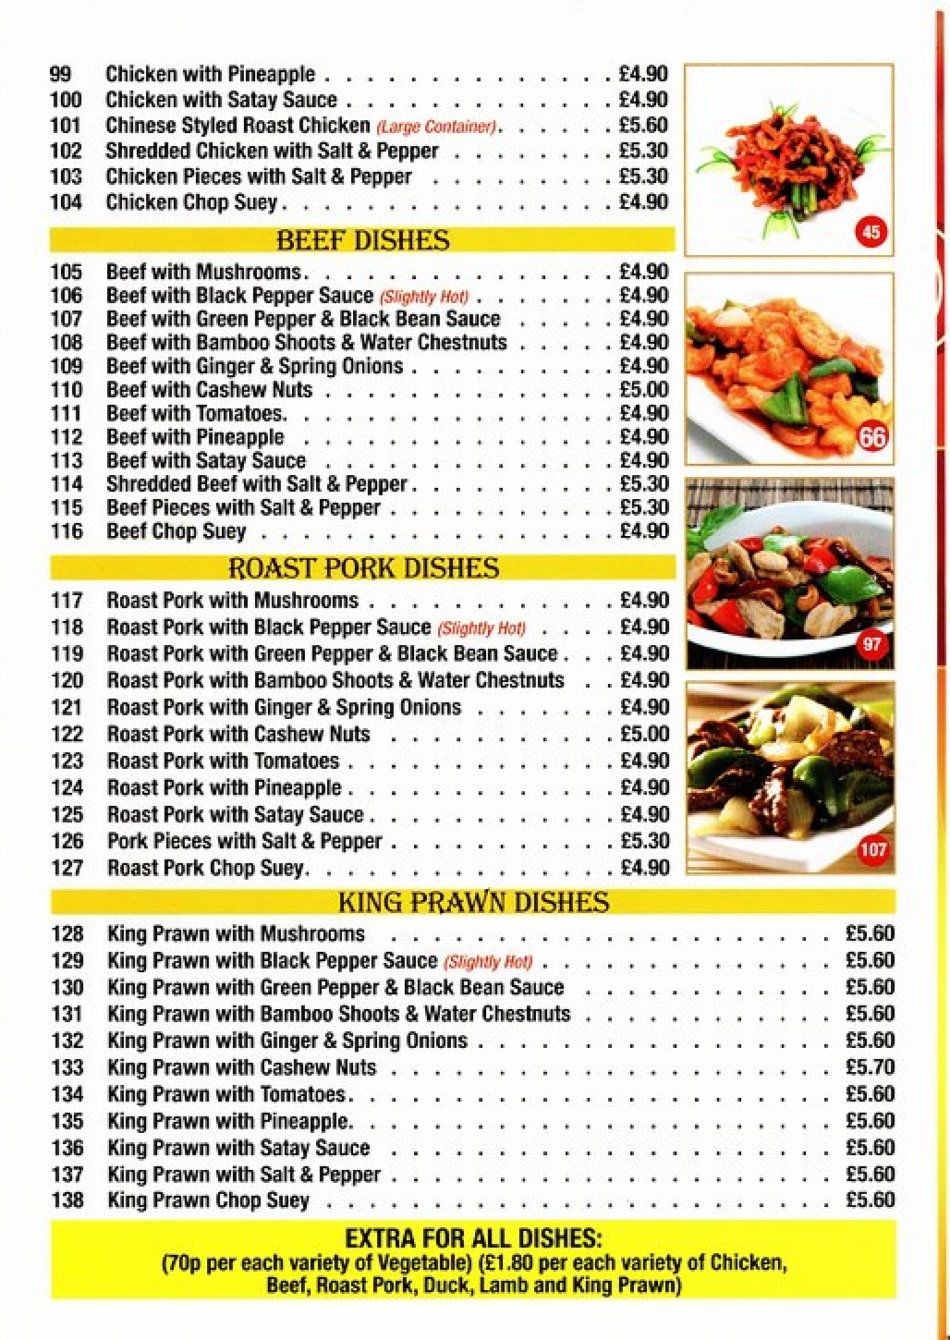 Takeaway Restaurant Menu Page - Golden Wonder Chinese Takeaway Wolverhampton - Wolverhampton